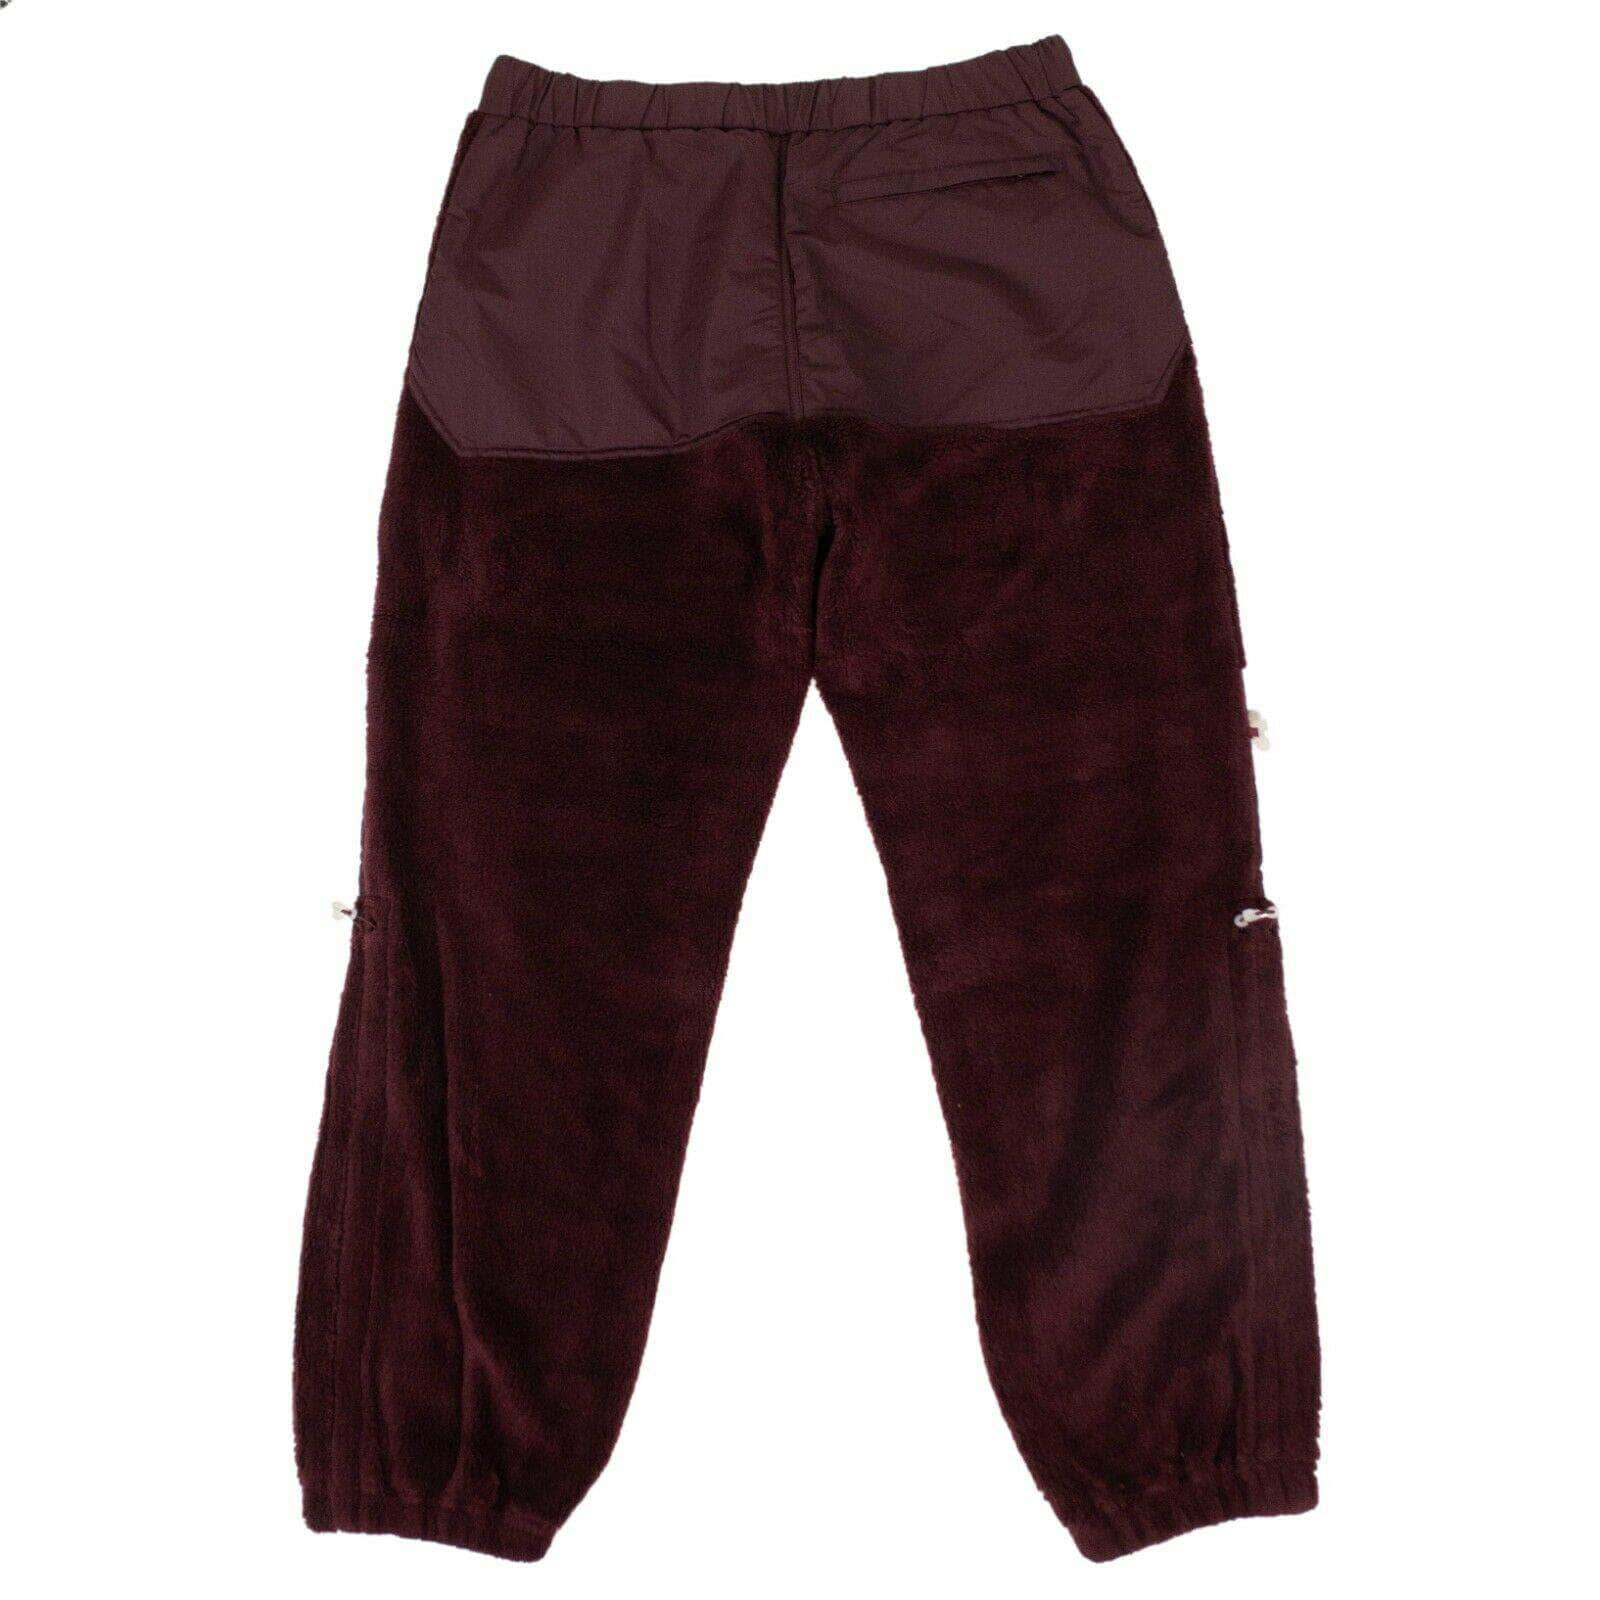 UNDERCOVER Men's Pants Acrylic Pants - Bordeaux Purple